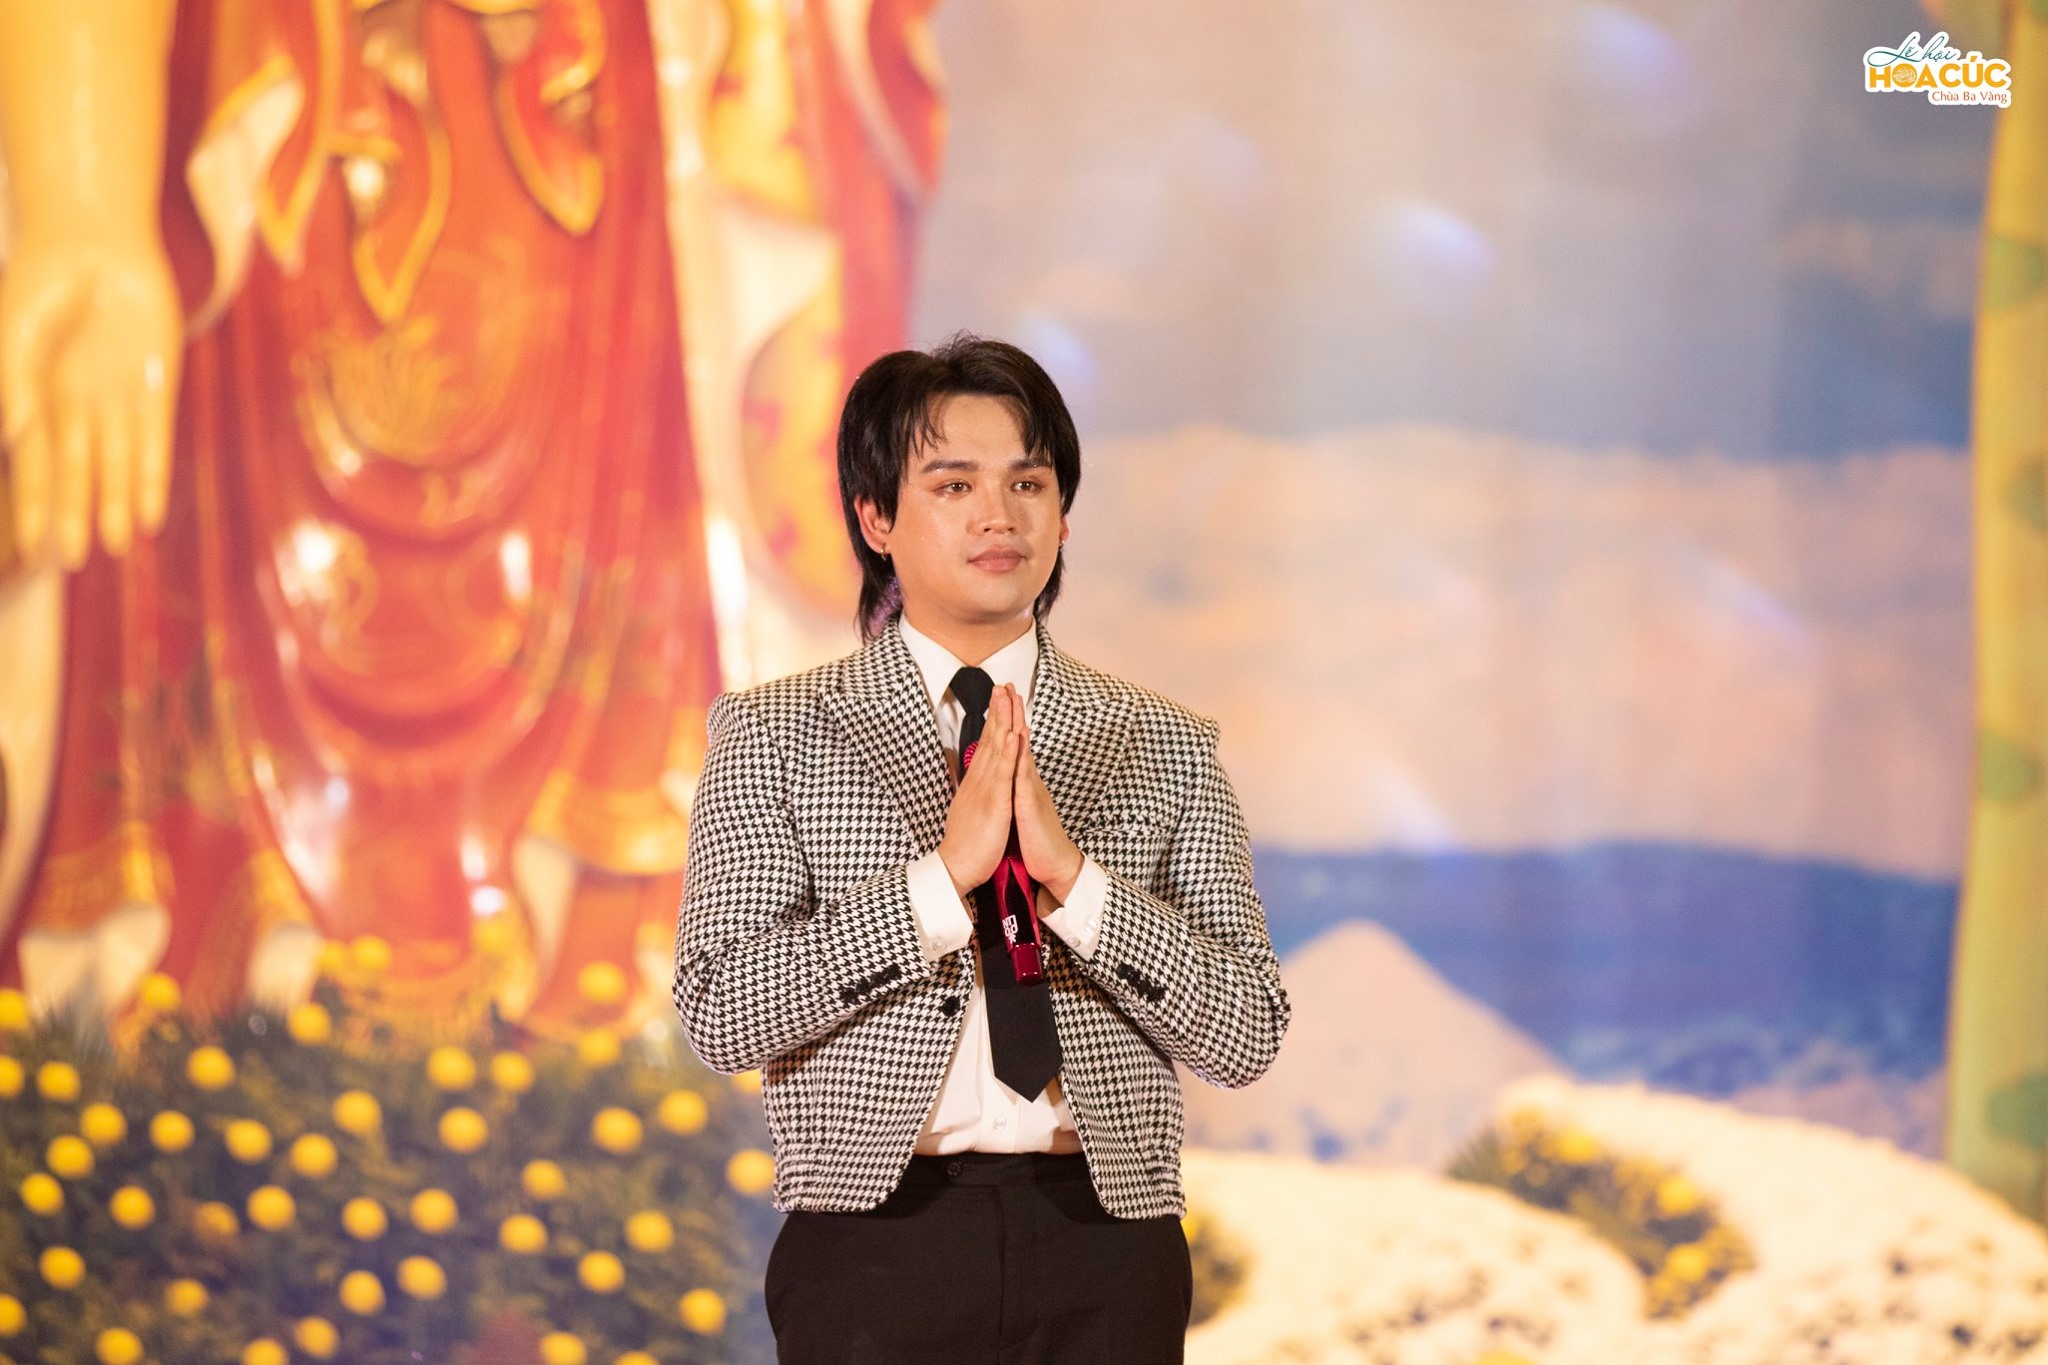 Giọt nước mắt xúc động của ca sĩ Nguyễn Trần Trung Quân trong đêm văn nghệ “Tuổi trẻ với tình yêu quê hương đất nước” chùa Ba Vàng